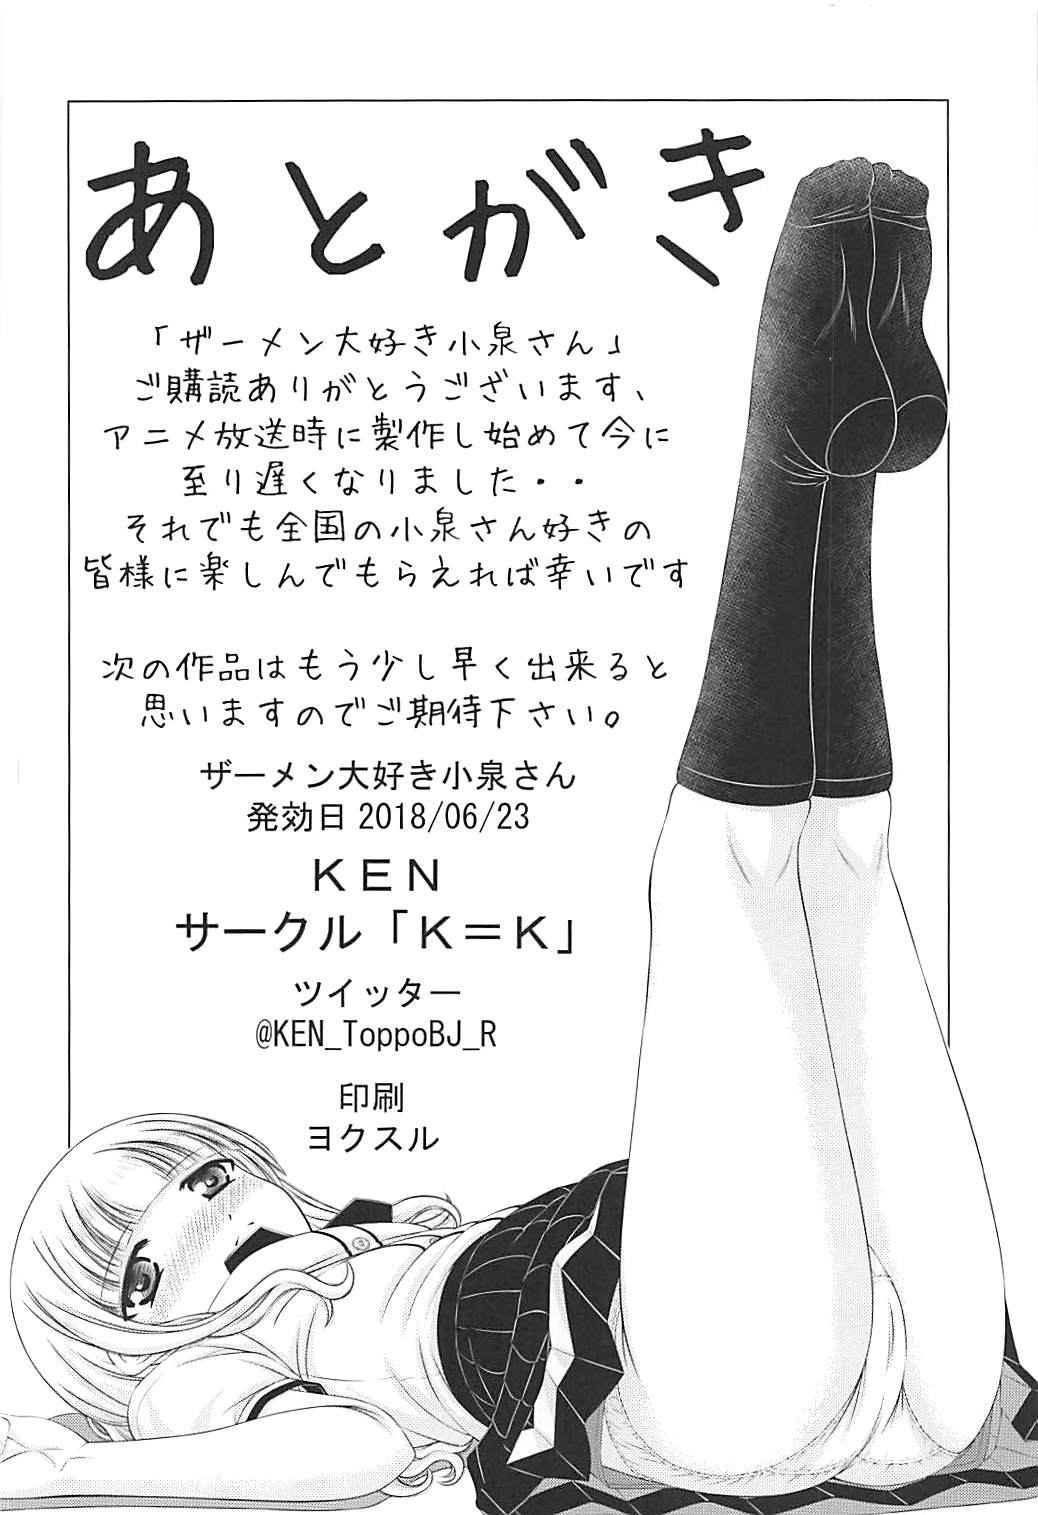 [「K=K」 (KEN)] ザーメン大好き小泉さん (ラーメン大好き小泉さん)